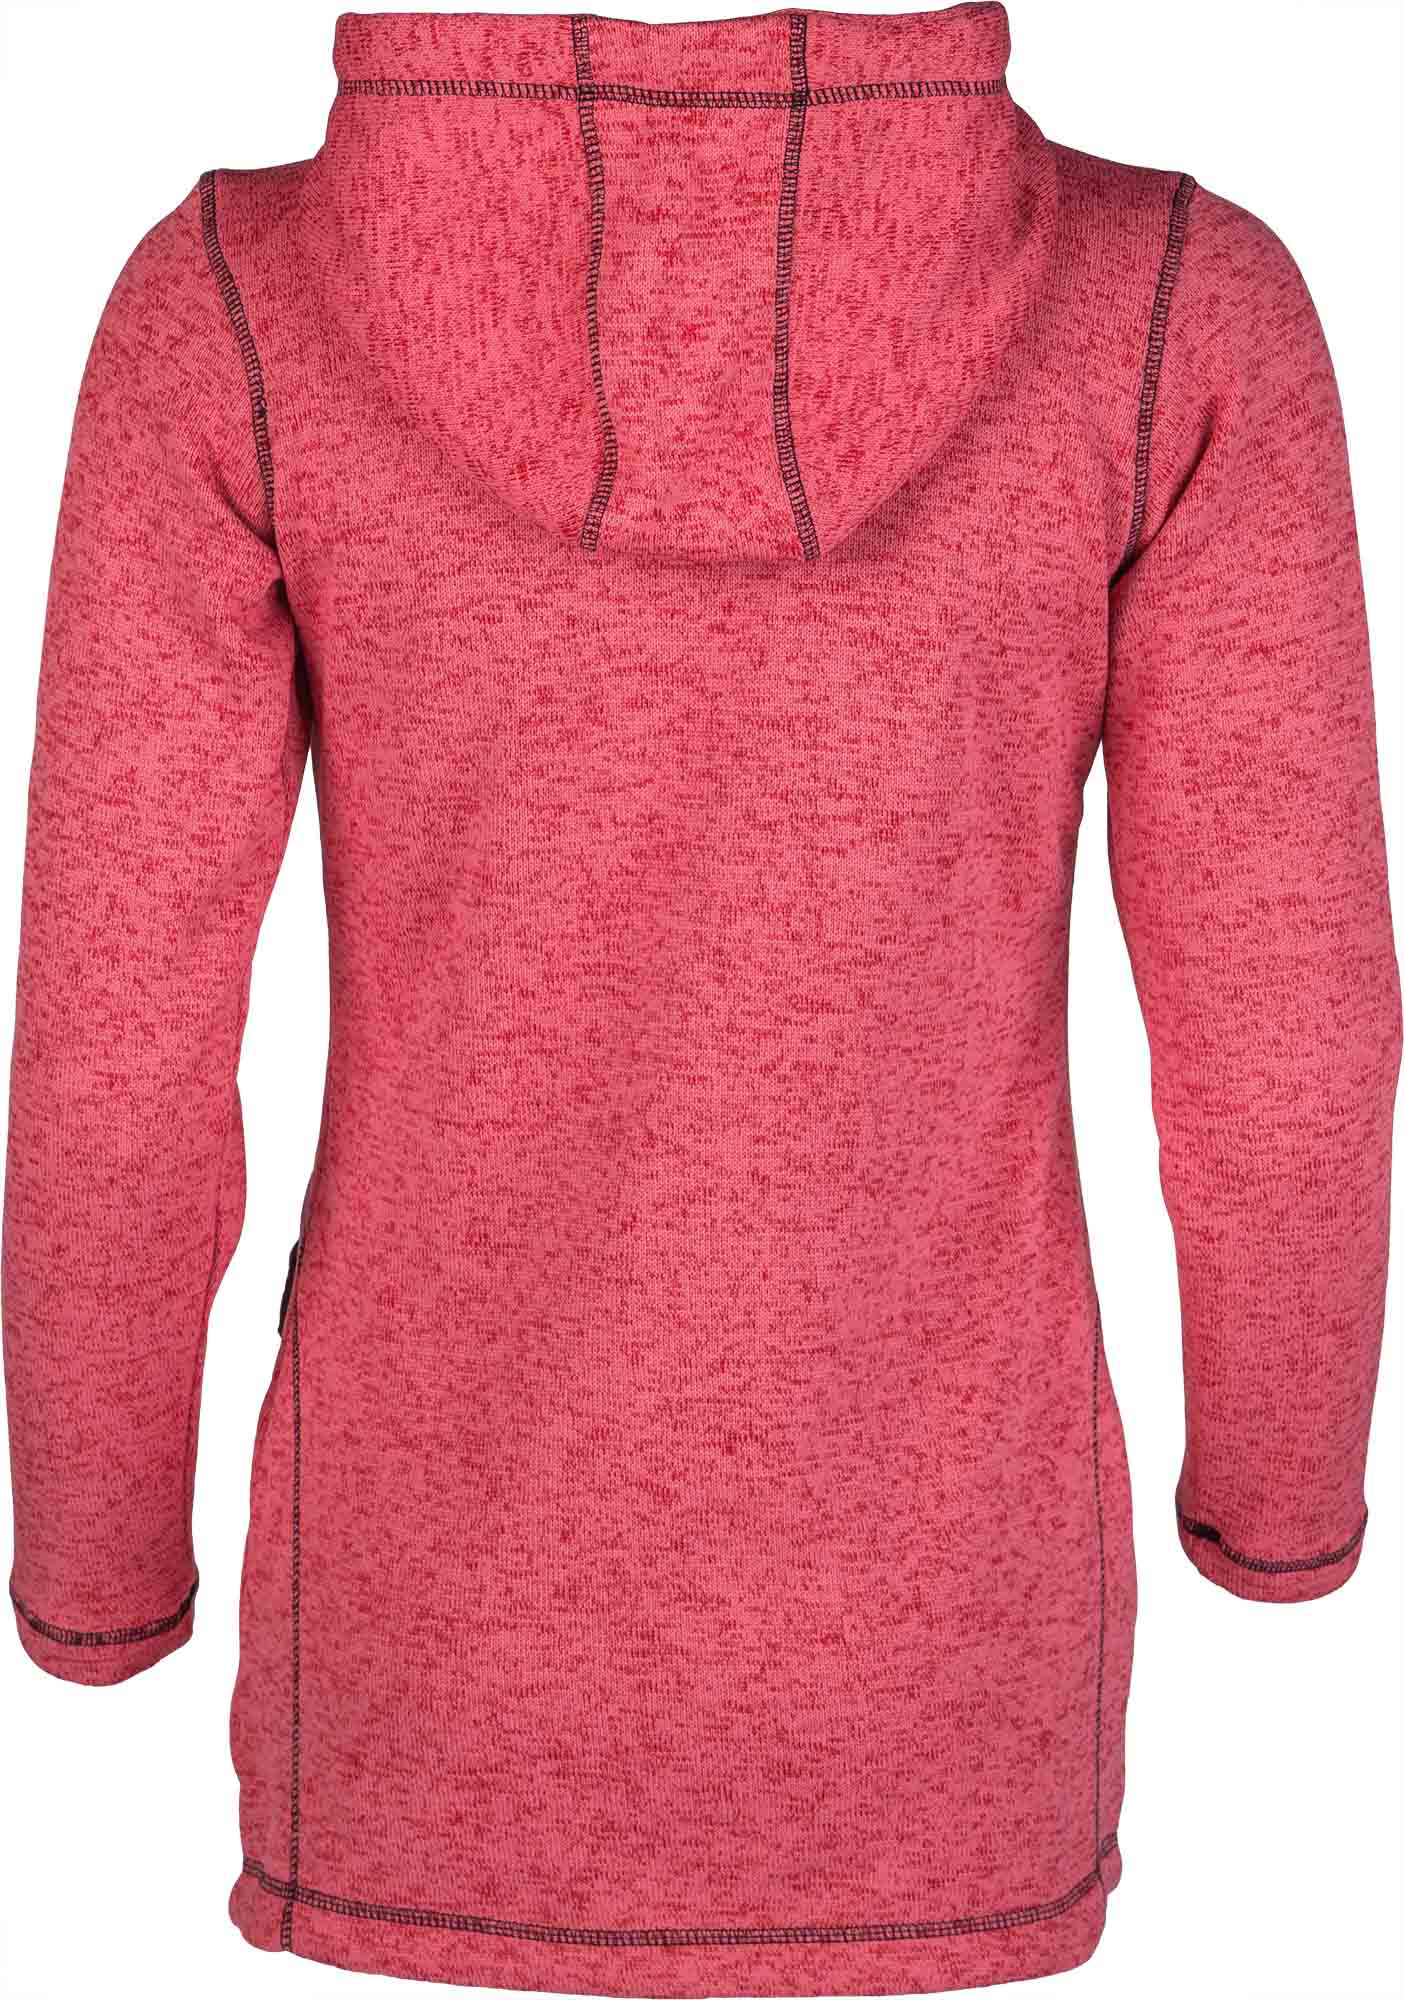 Women’s fleece sweatshirt in pullover design